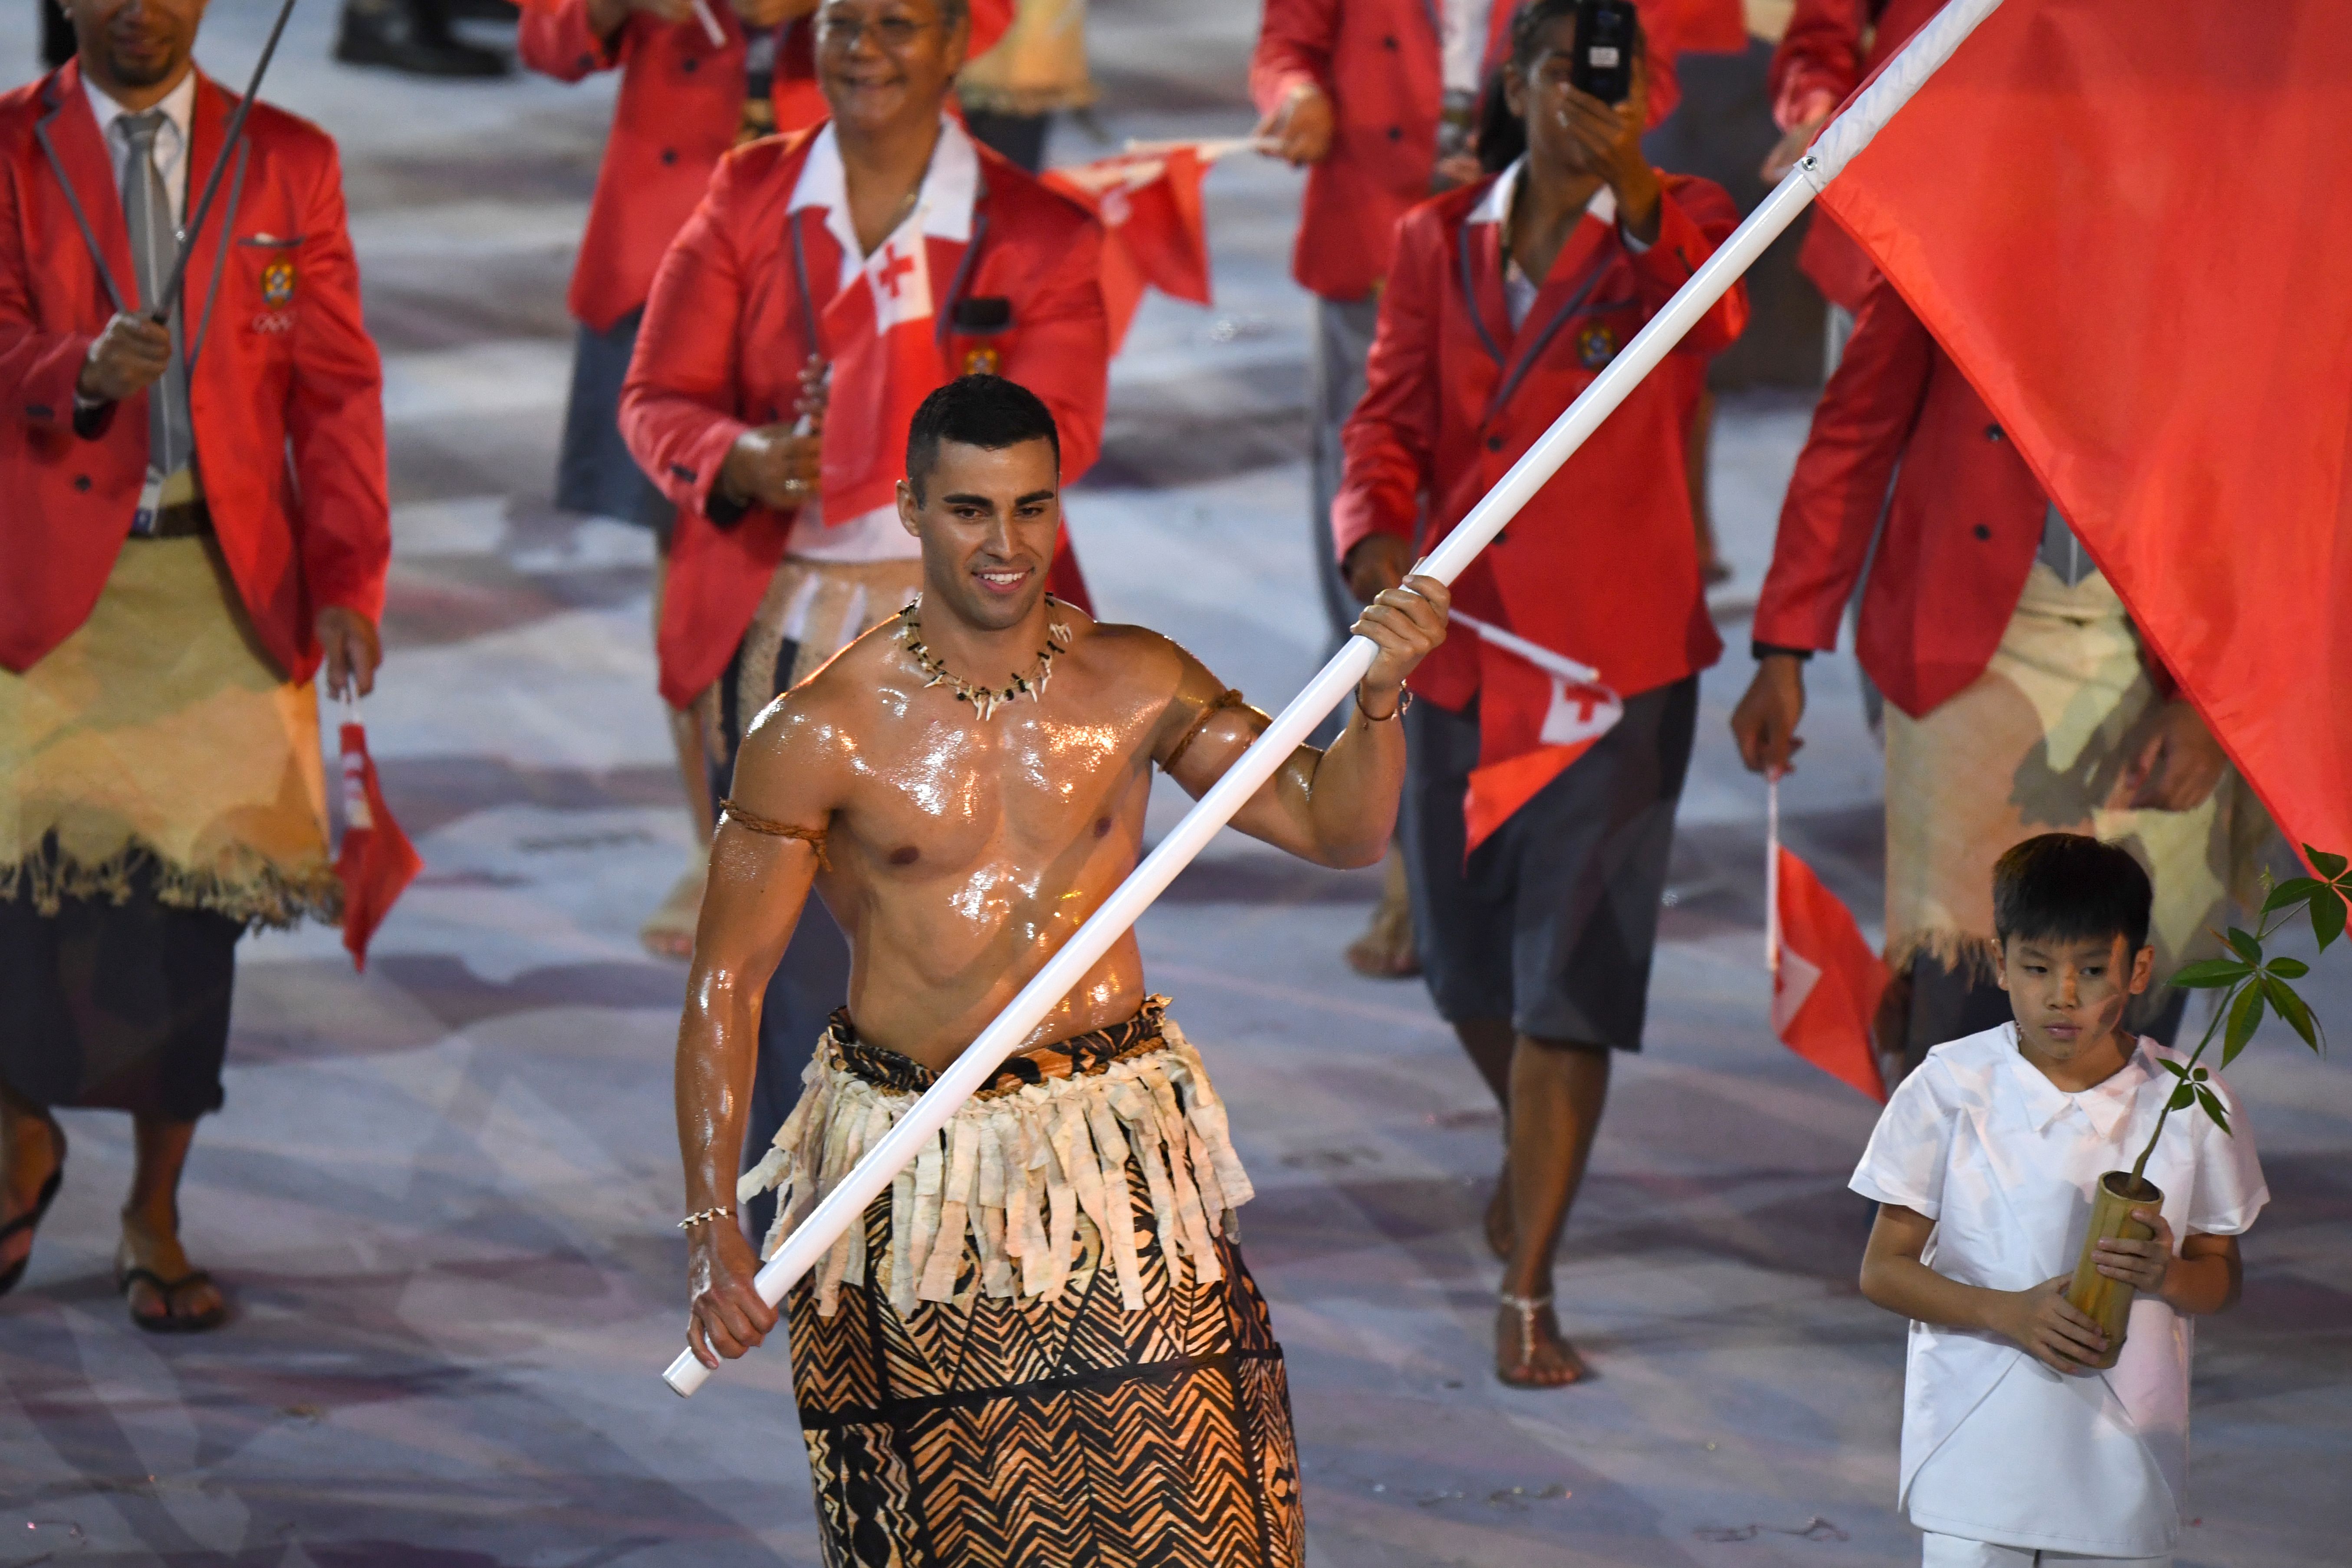 2016년 리우데자네이루올림픽에 통가의 태권도 대표로 출전한 피타 니콜라스 타우파토푸아가 대회 개회식에 통가 선수단 기수로 국기를 들고 근육질 몸매를 뽐내며 입장하고 있다. 로이터 자료사진 